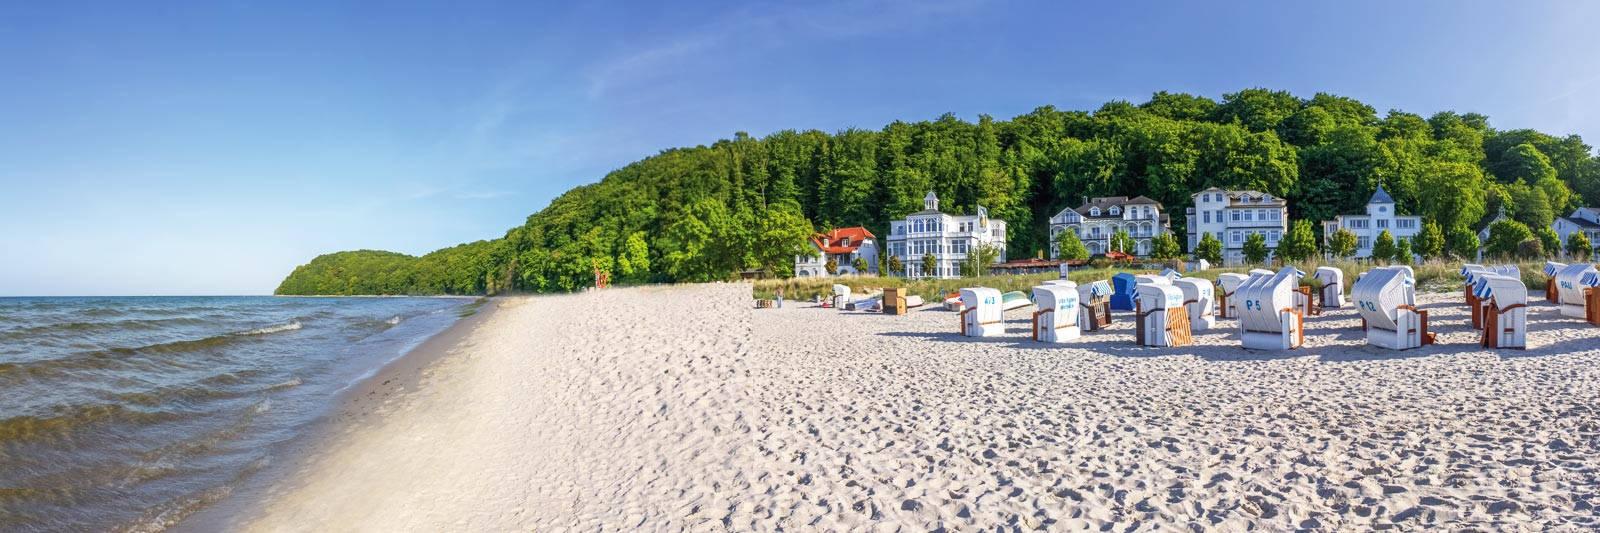 21 Ferienwohnungen und Ferienhäuser in Laage - tourist-online.de